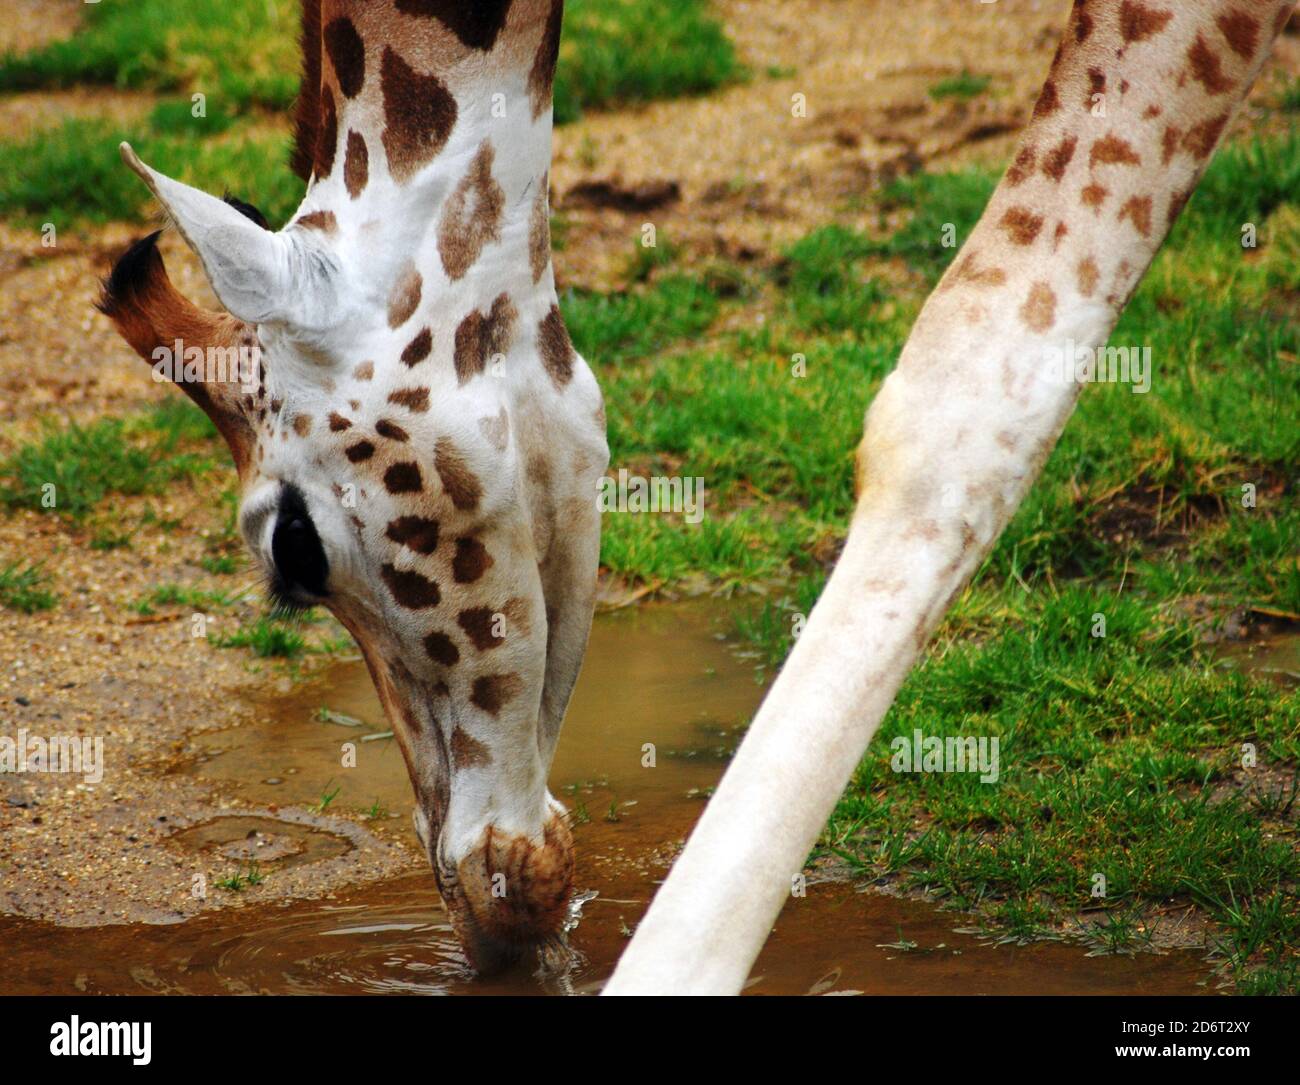 Giraffa di Young Rothschild (Giraffa camelopardalis rothschildi) primo piano di testa e gambe, acqua potabile una delle specie di sottogiraffe più minacciate Foto Stock